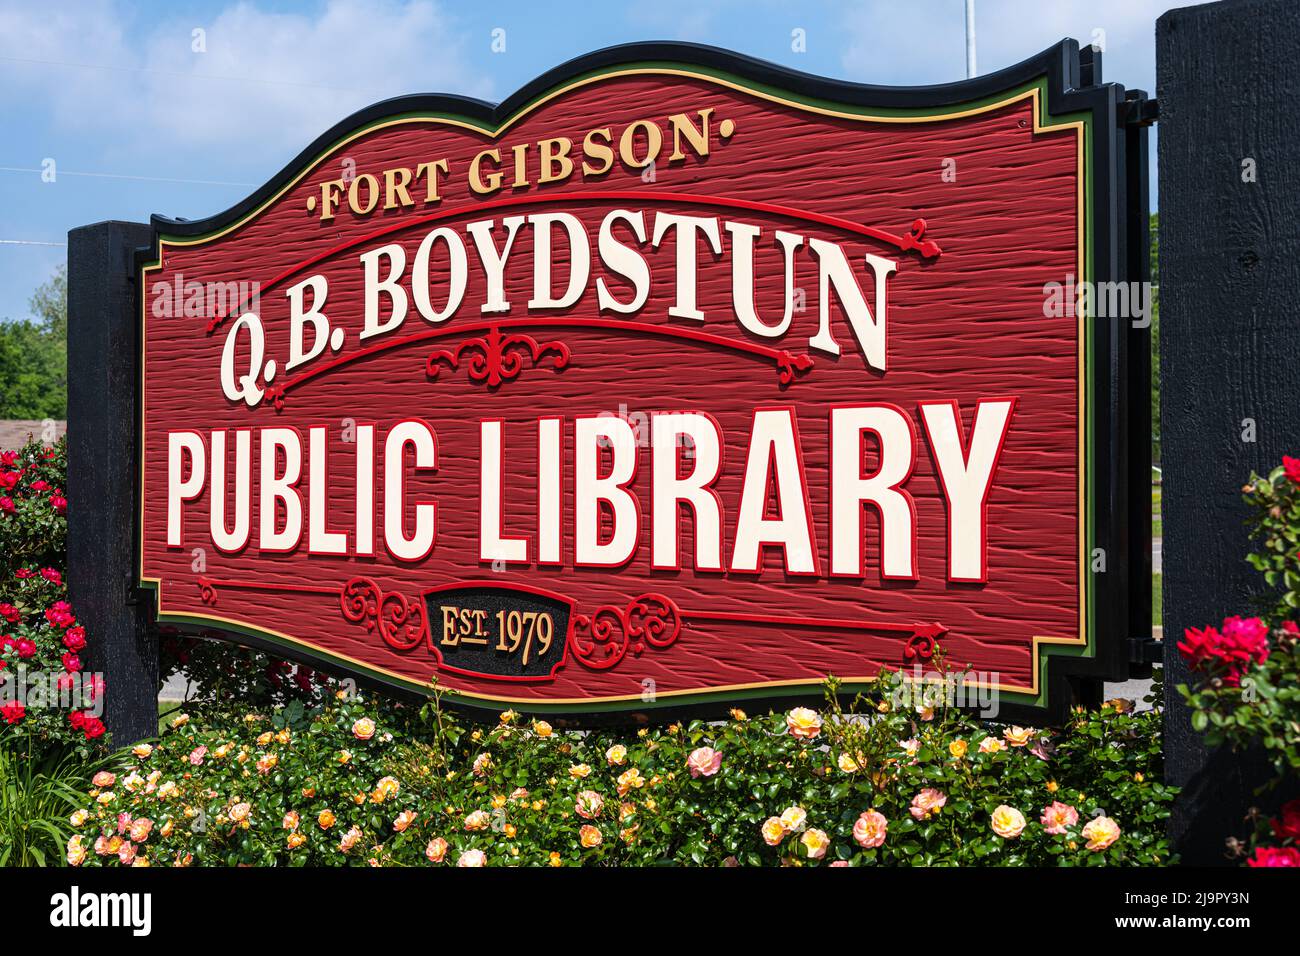 Panneaux d'entrée pour fort Gibson, Oklahoma's Q.B. Boydstun public Library, une bibliothèque communautaire locale du Eastern Oklahoma Library System. (ÉTATS-UNIS) Banque D'Images